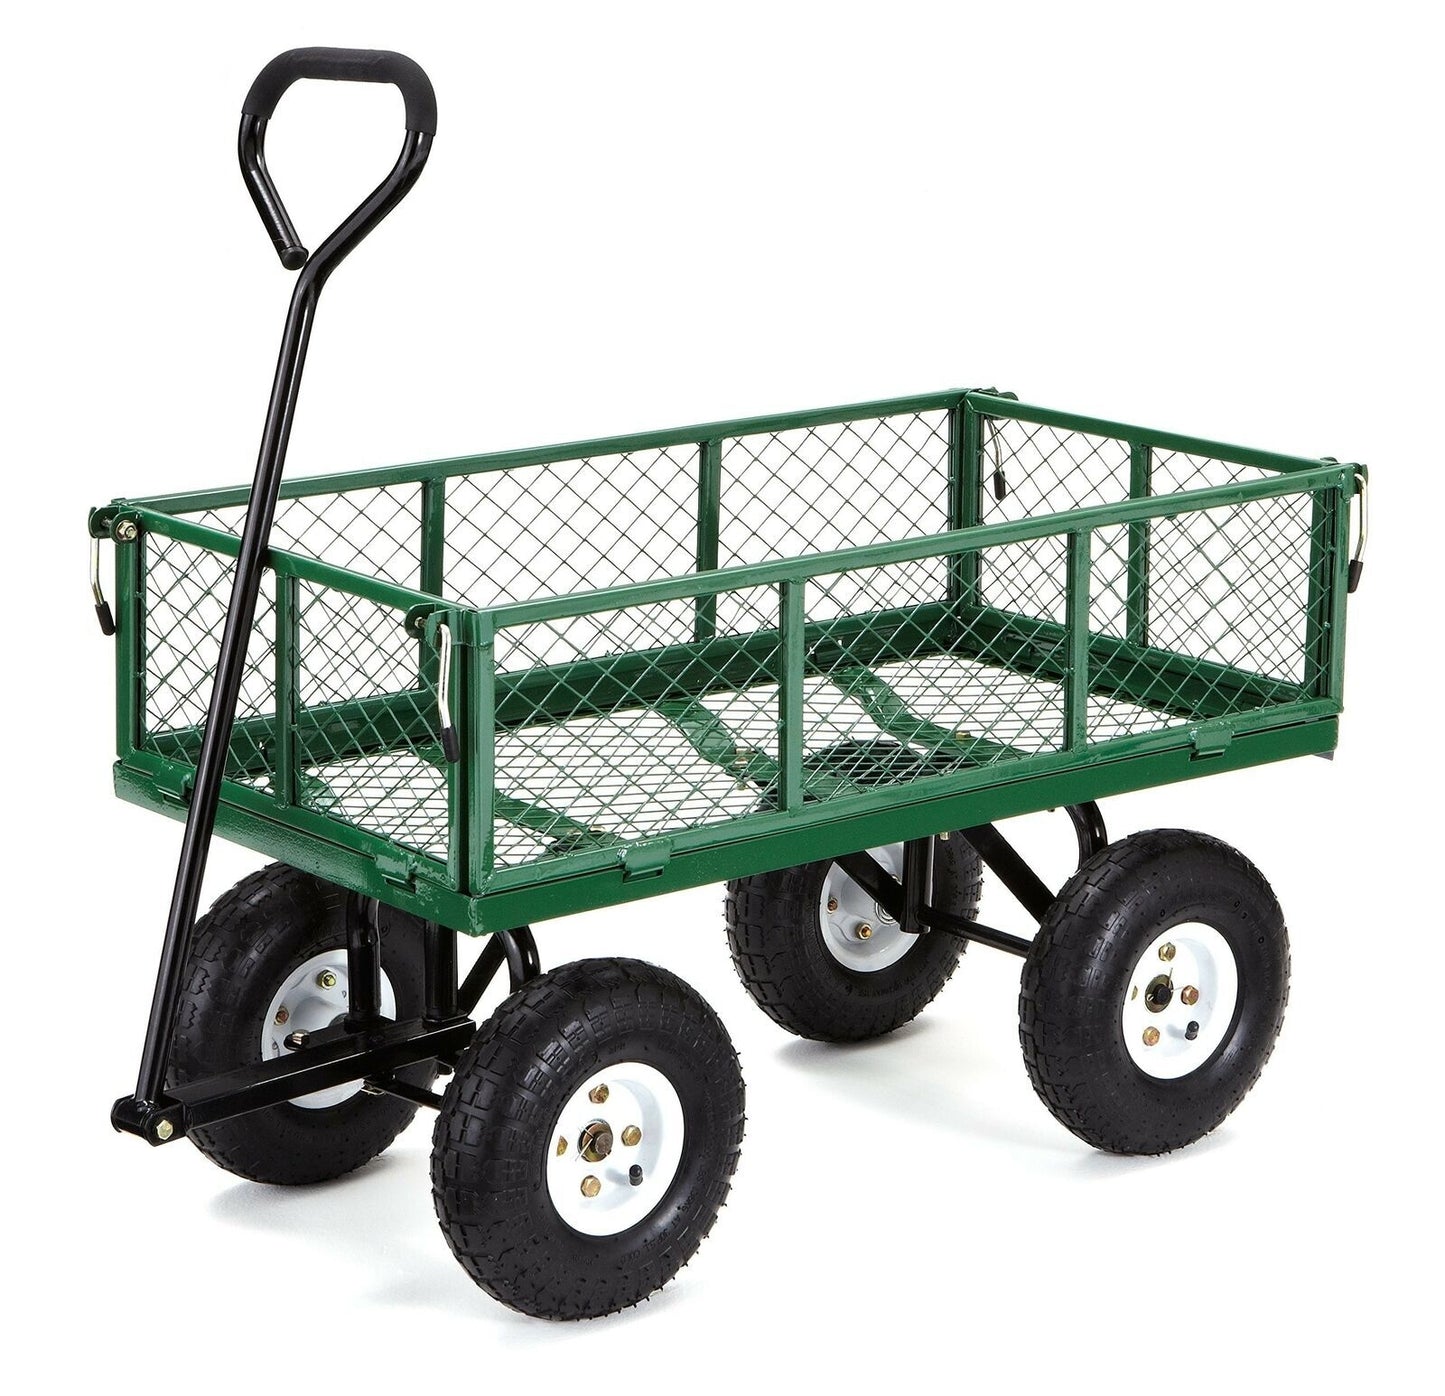 Garden Cart Steel Mesh